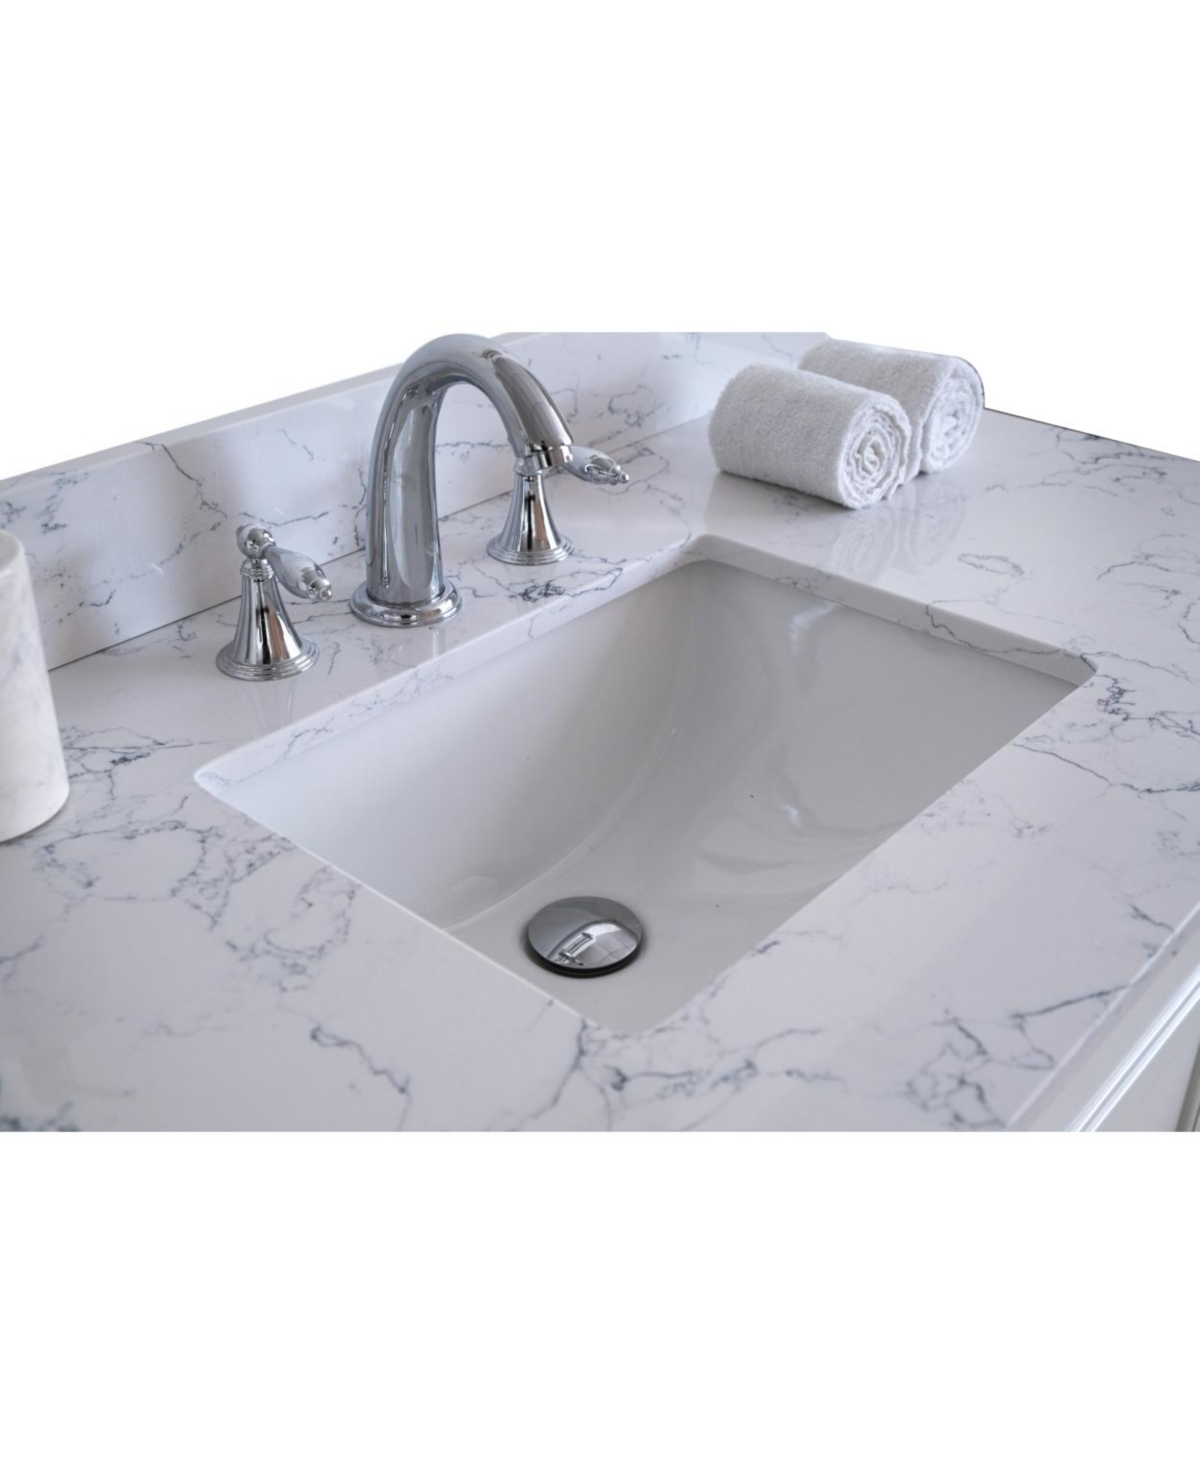 Carrara Jade Marble Vanity Top with Sink & Backsplash - White